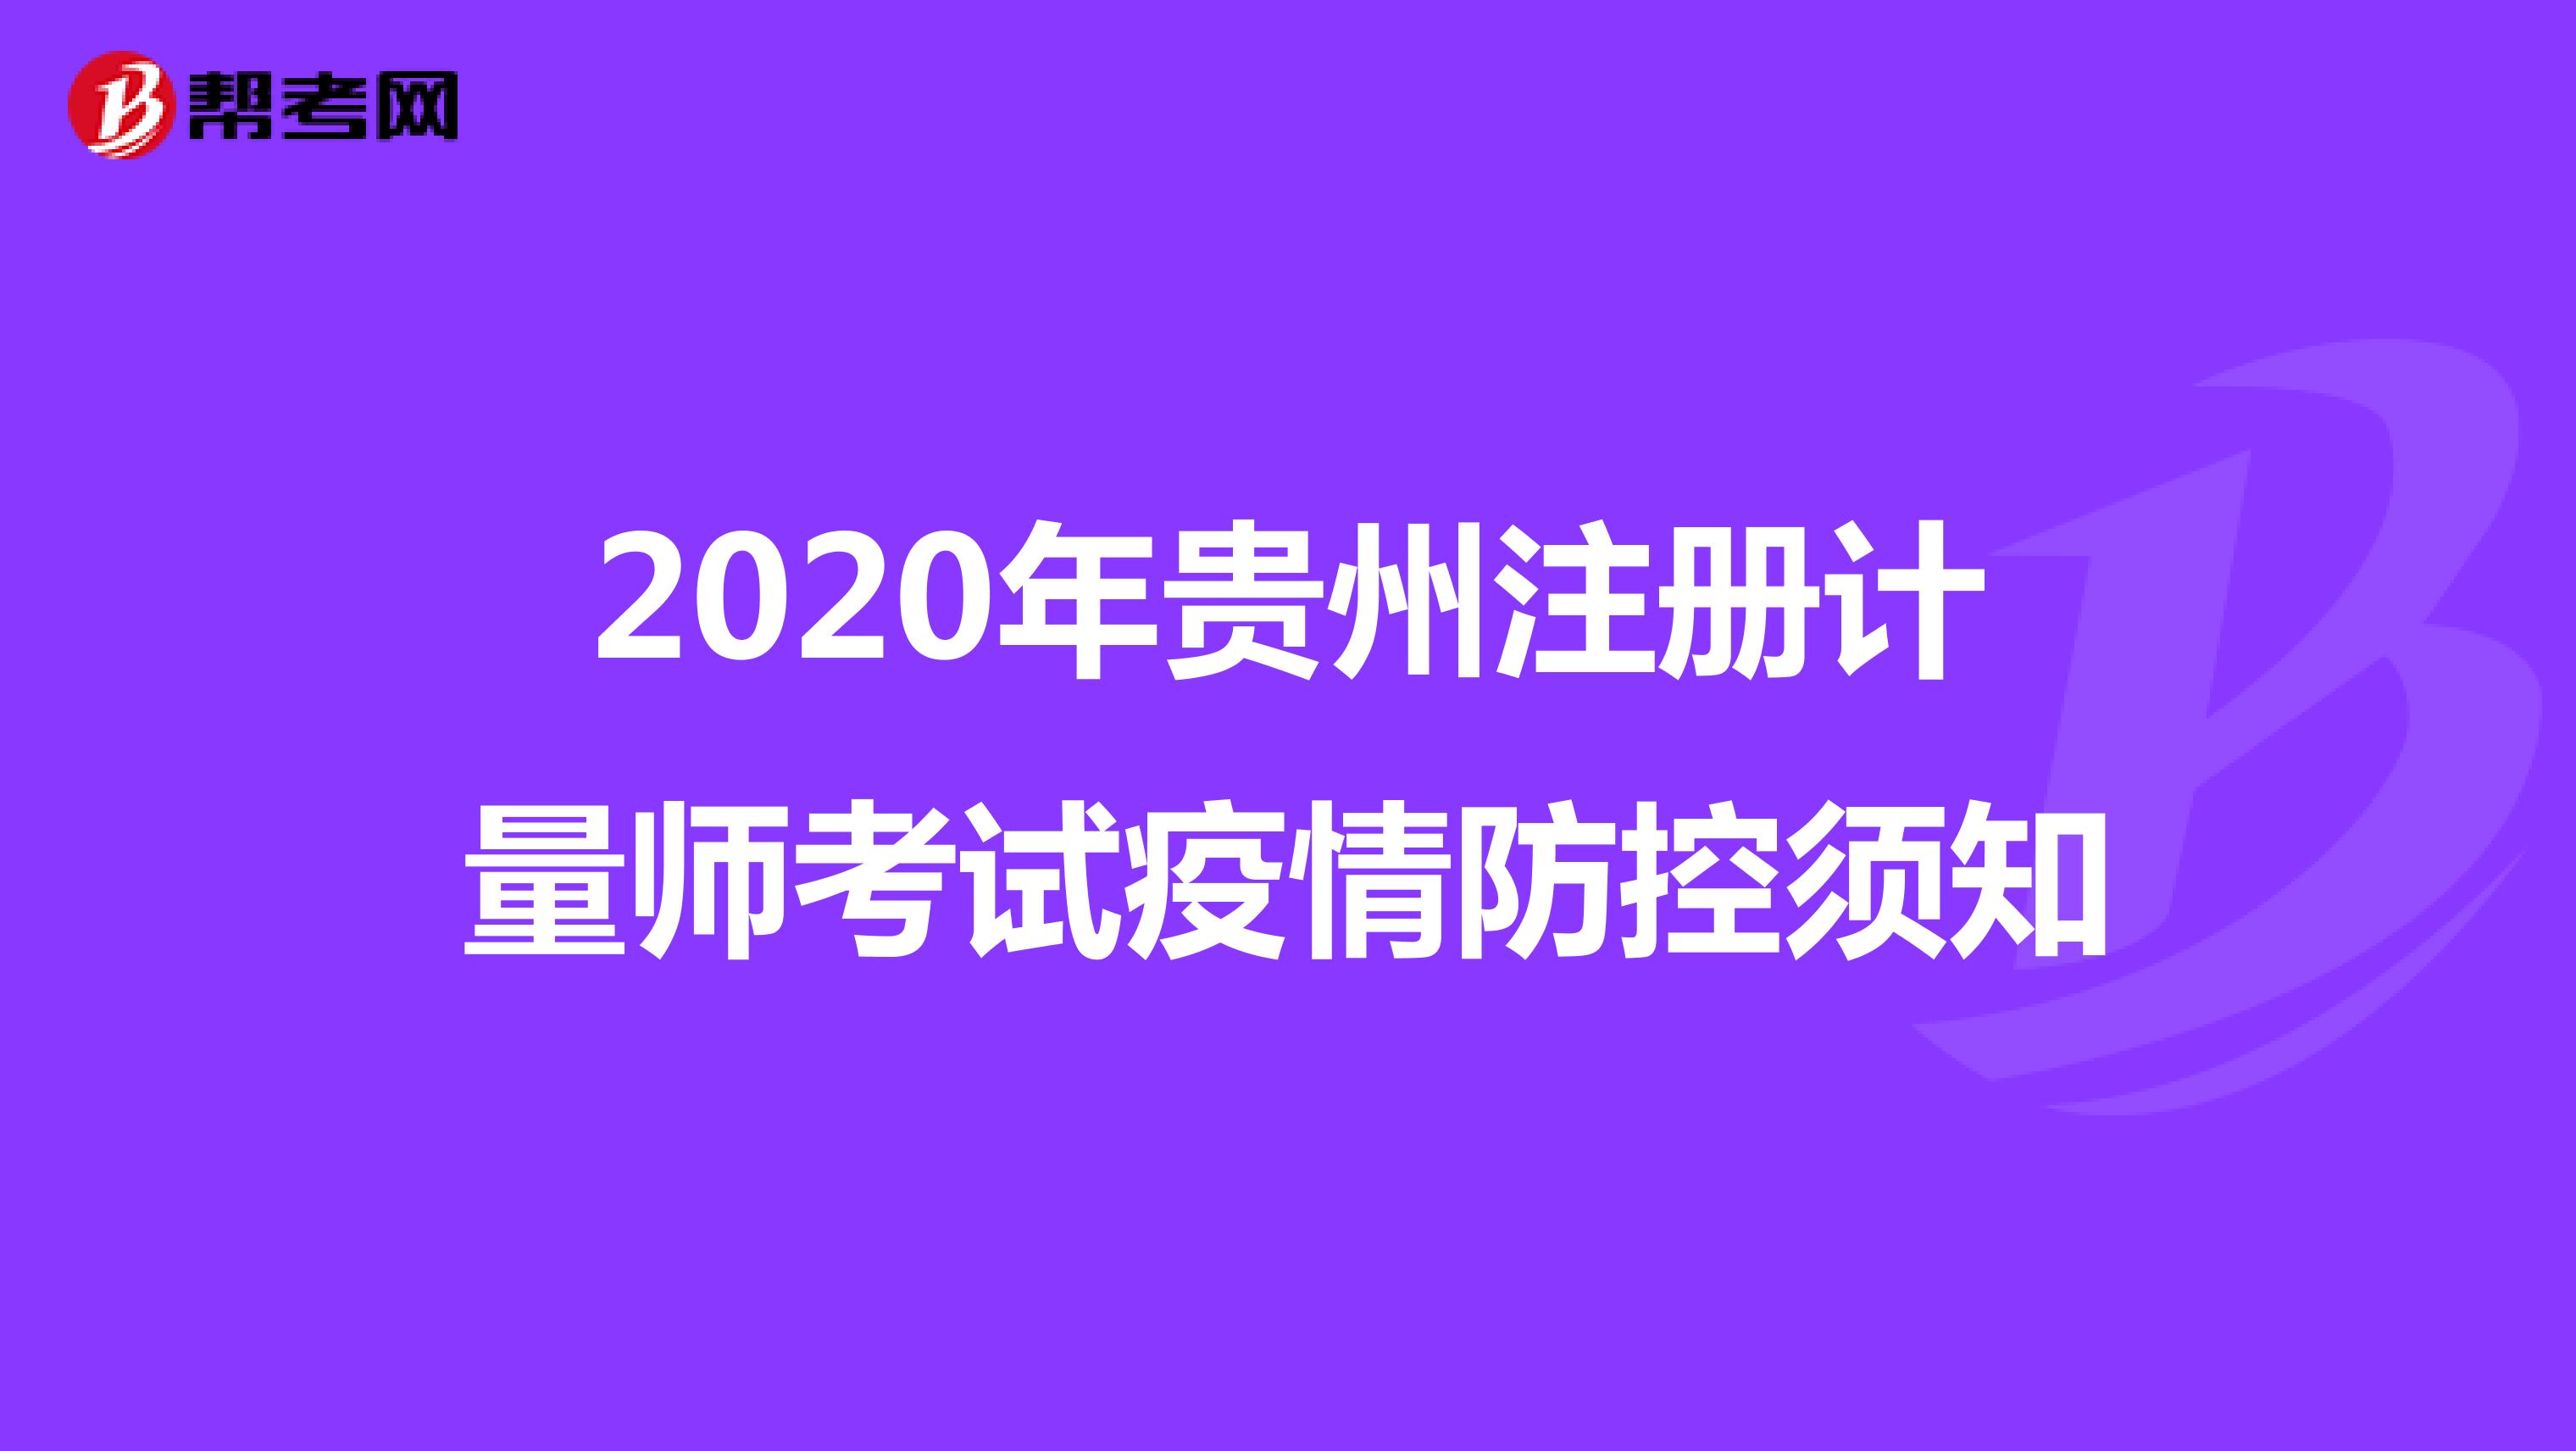 2020年贵州注册计量师考试疫情防控须知